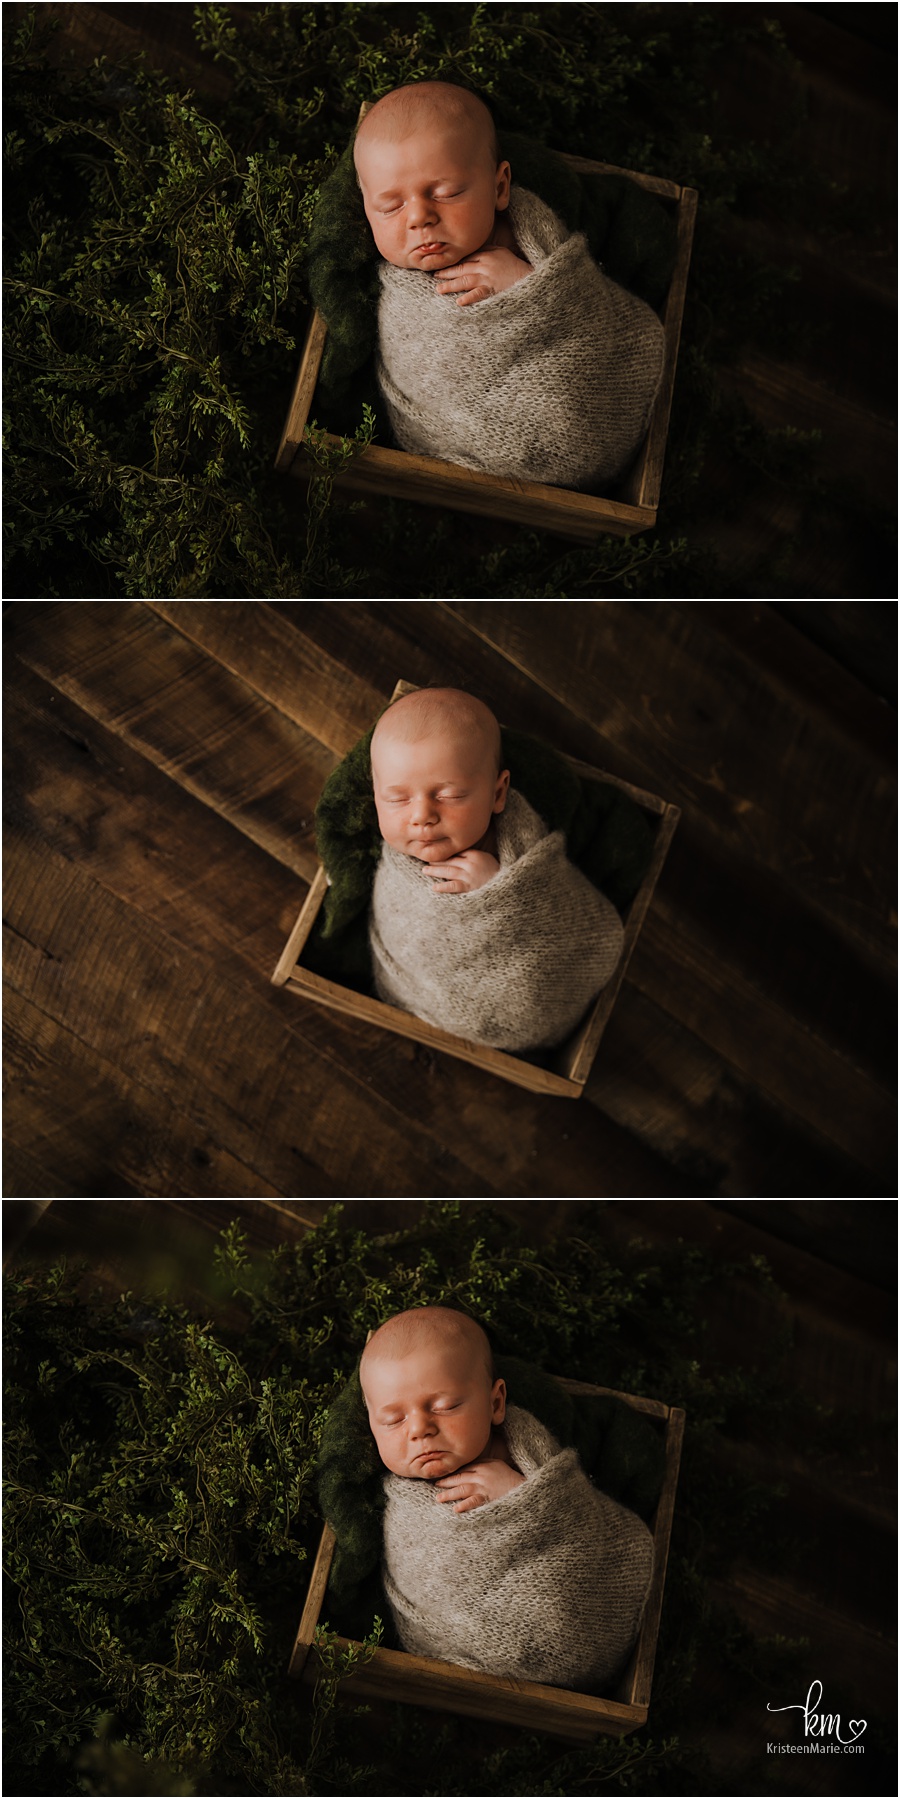 Newborn boy in rustic box with greenery